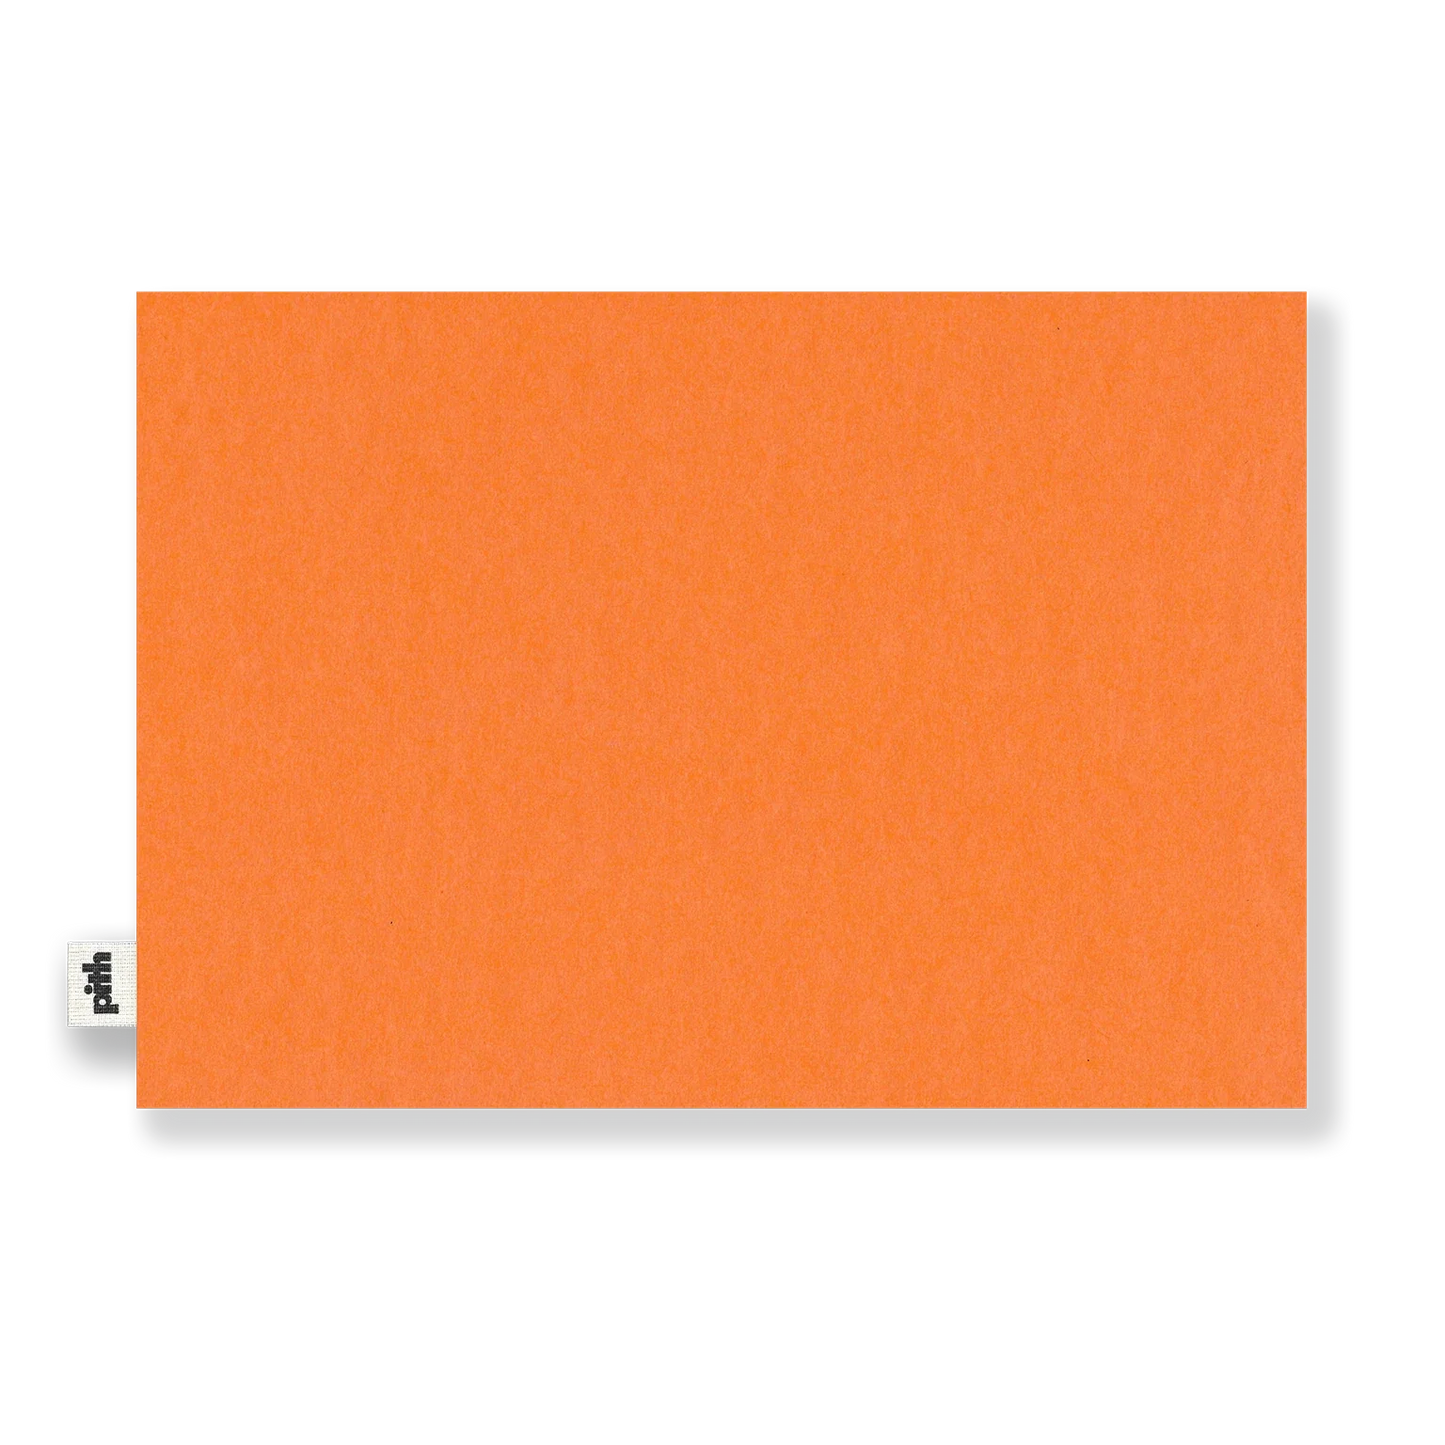 Pith Tangelo Schetsboek Oranje voorkant zonder label